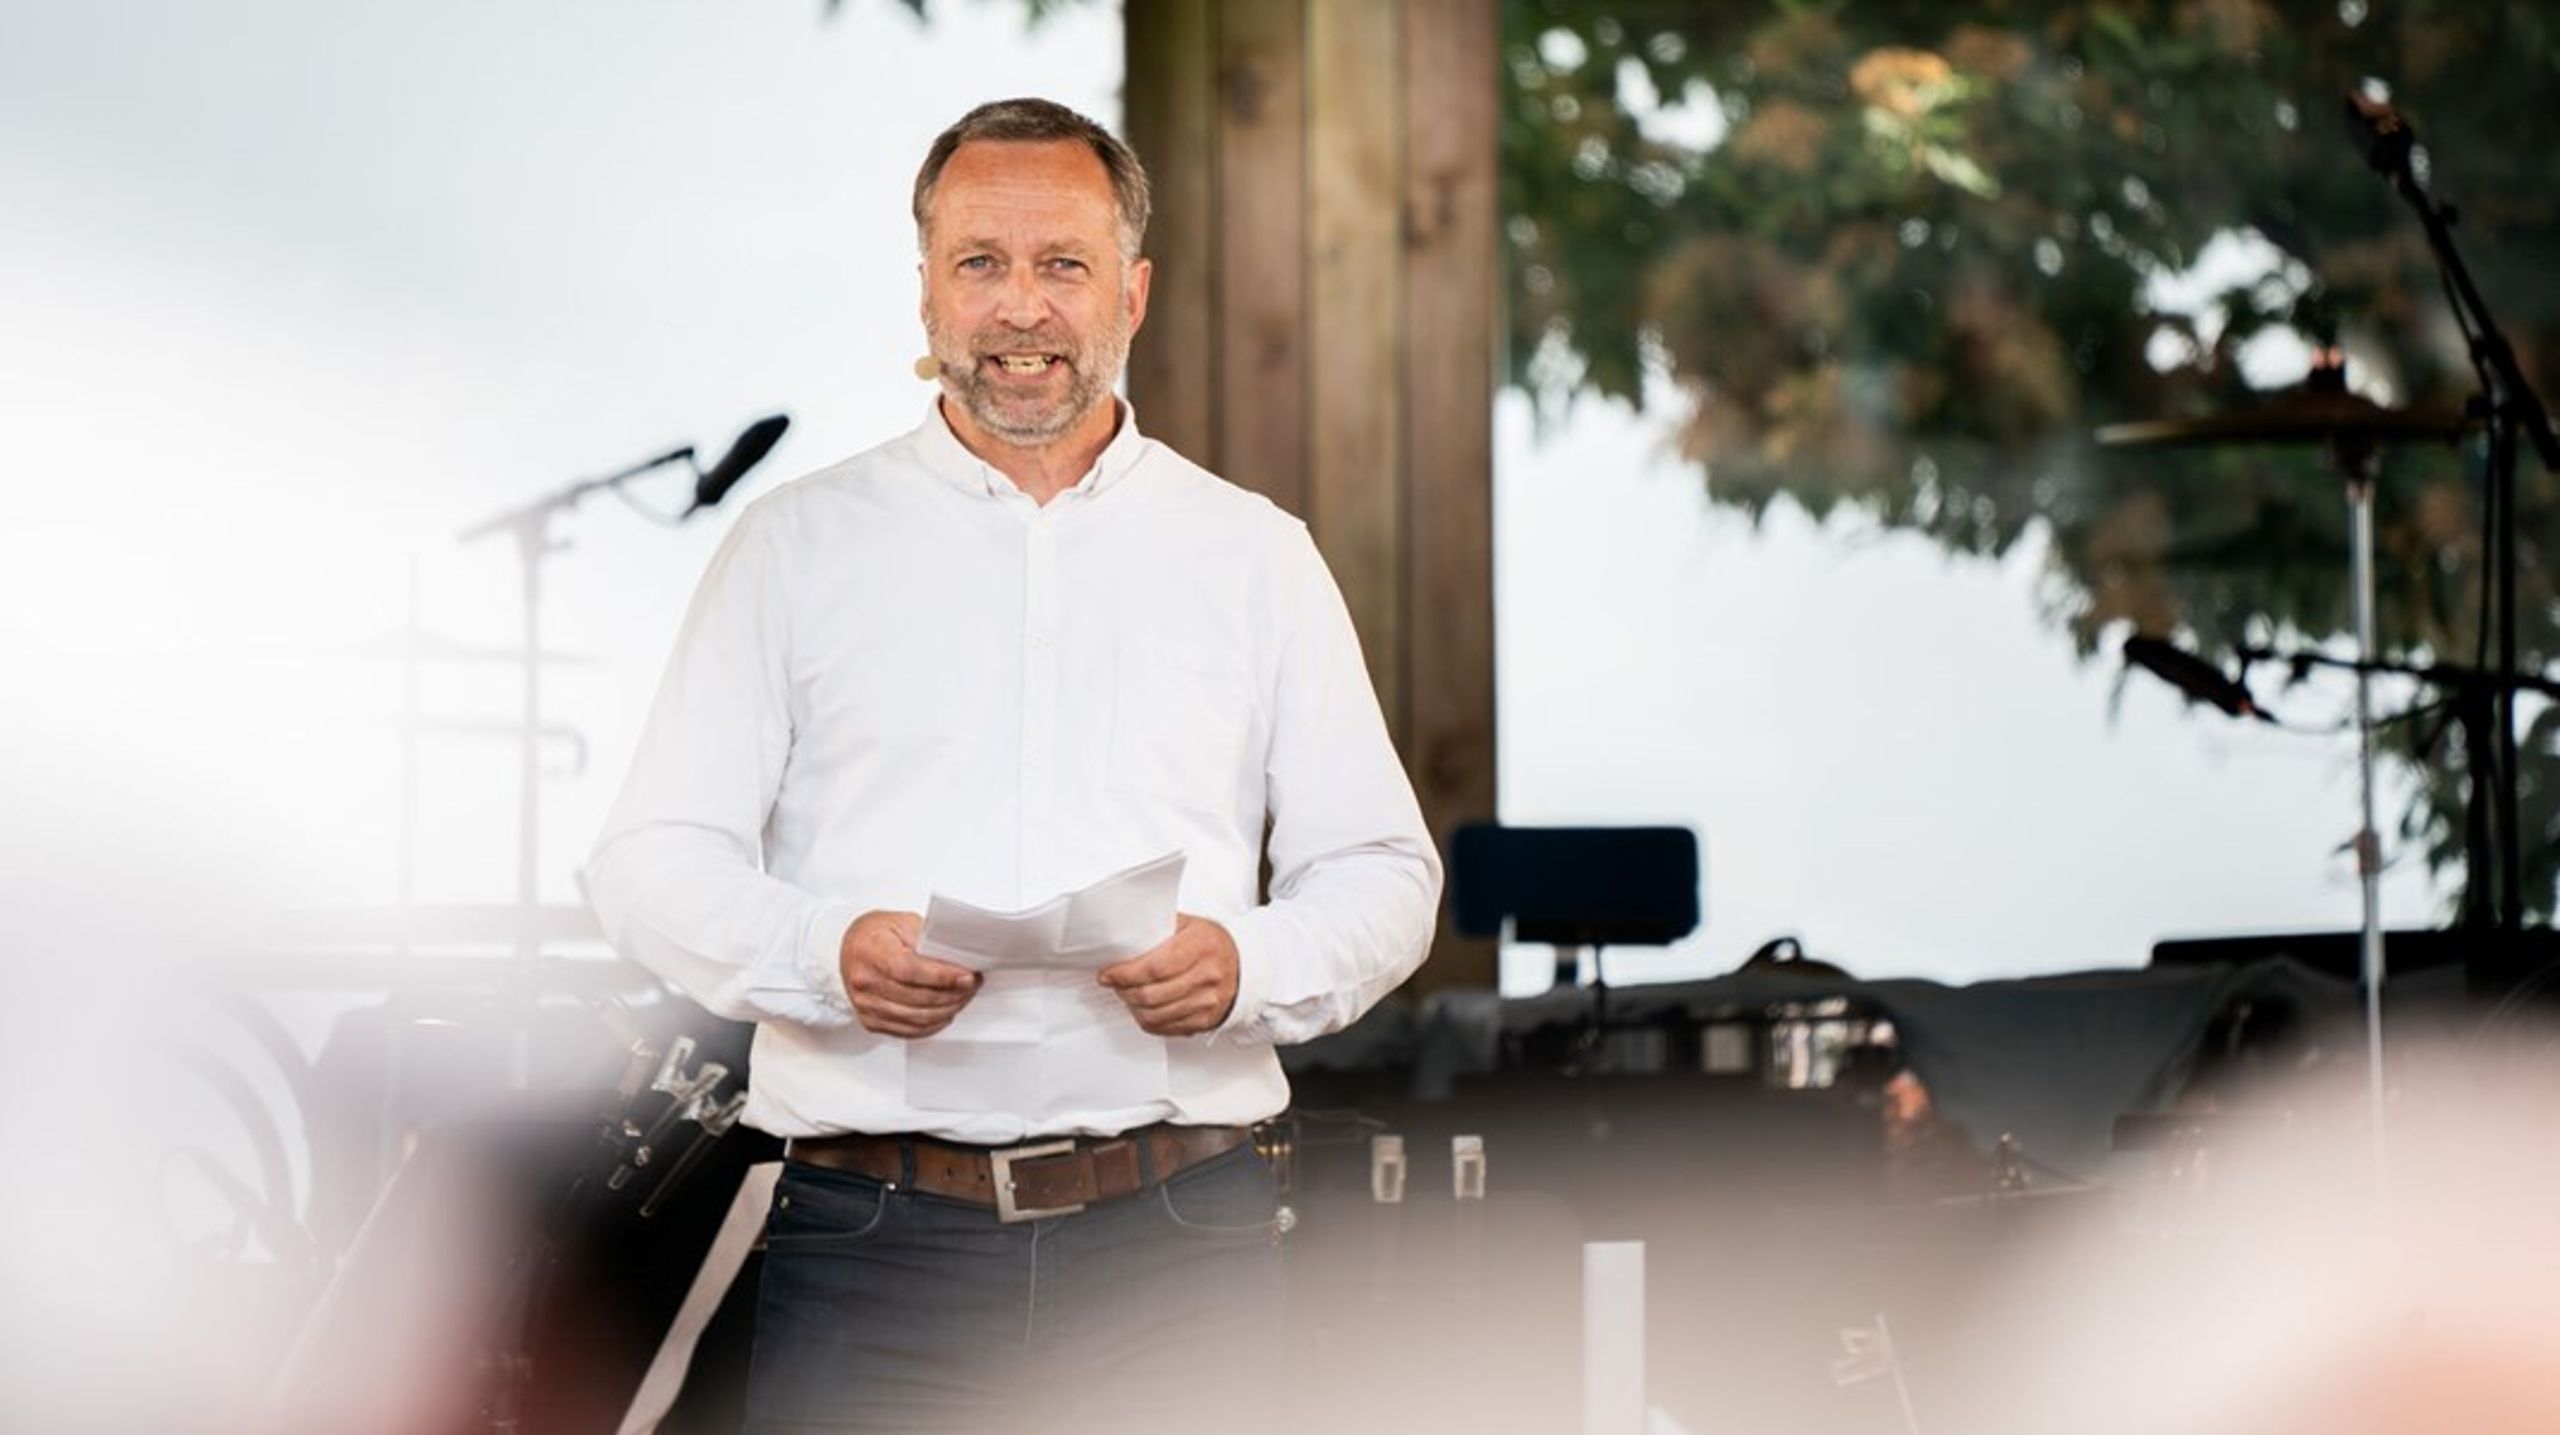 Bornholms Kommune har sparet i 20 år, og nu er smertegrænsen nået, lyder det fra borgmester Jacob Trøst (K). Han vil have 200 millioner kroner ekstra fra staten.<br>